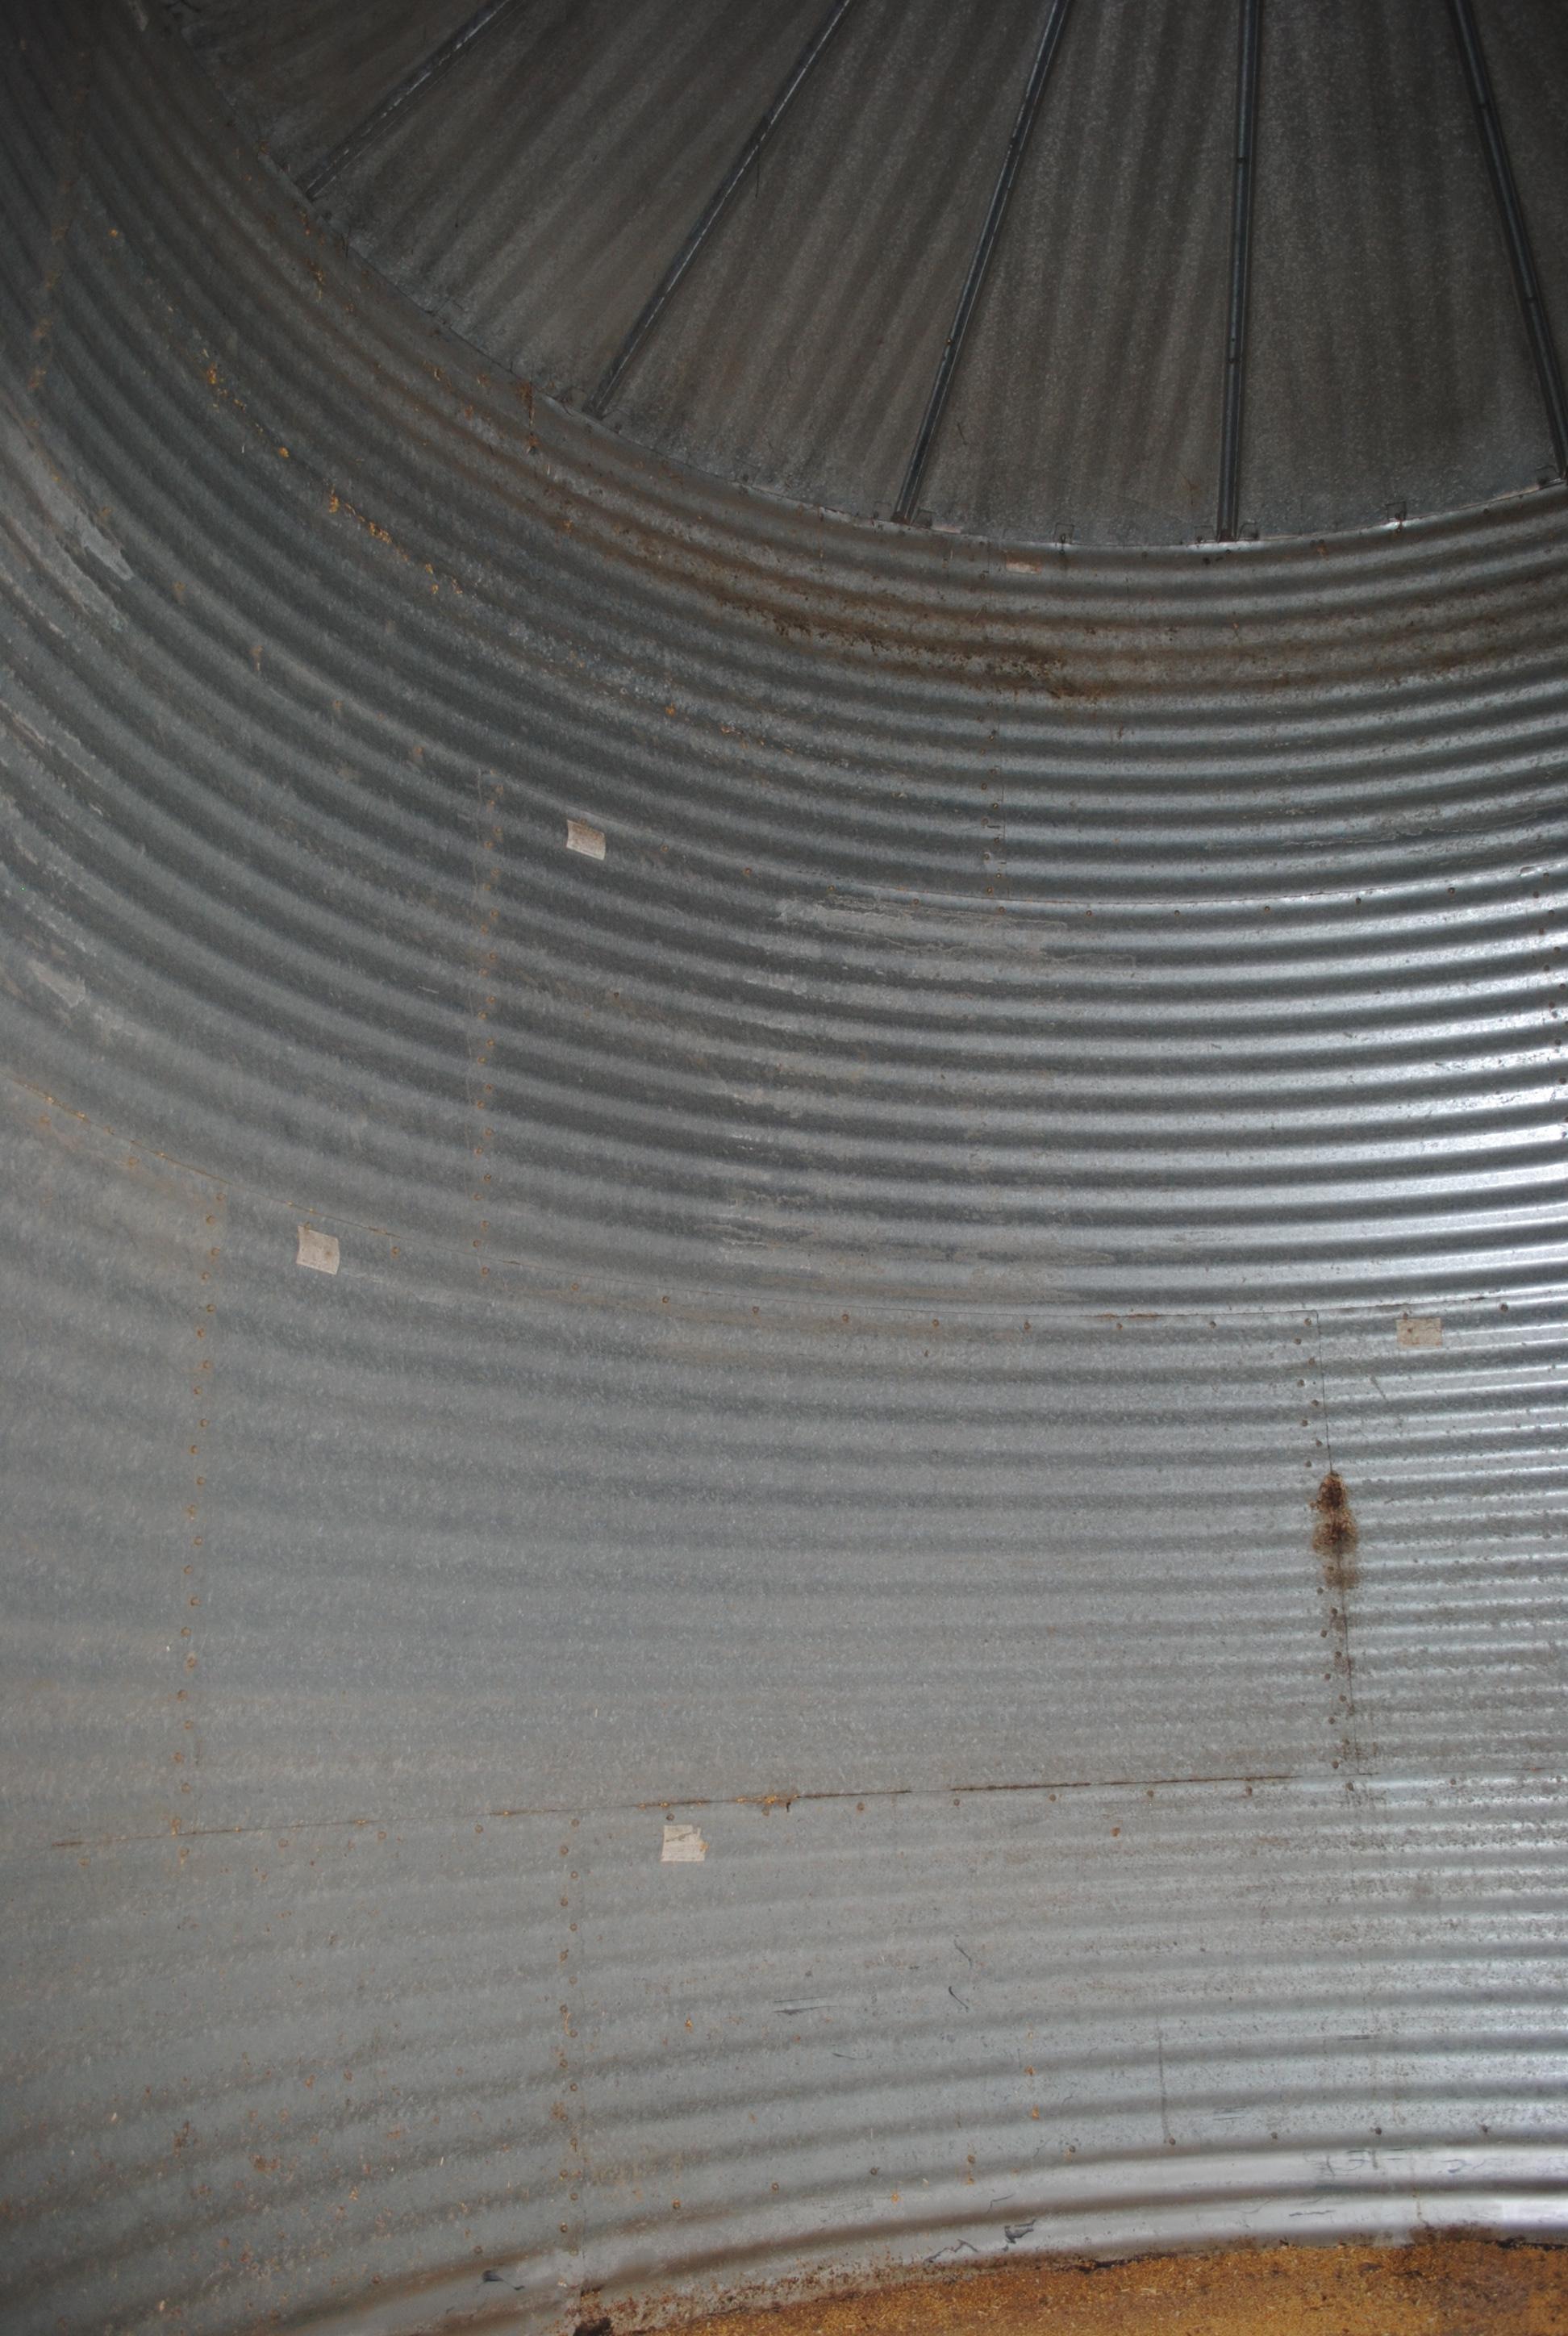 Butler 16' Grain Bin, 4-ring, unload auger in concrete